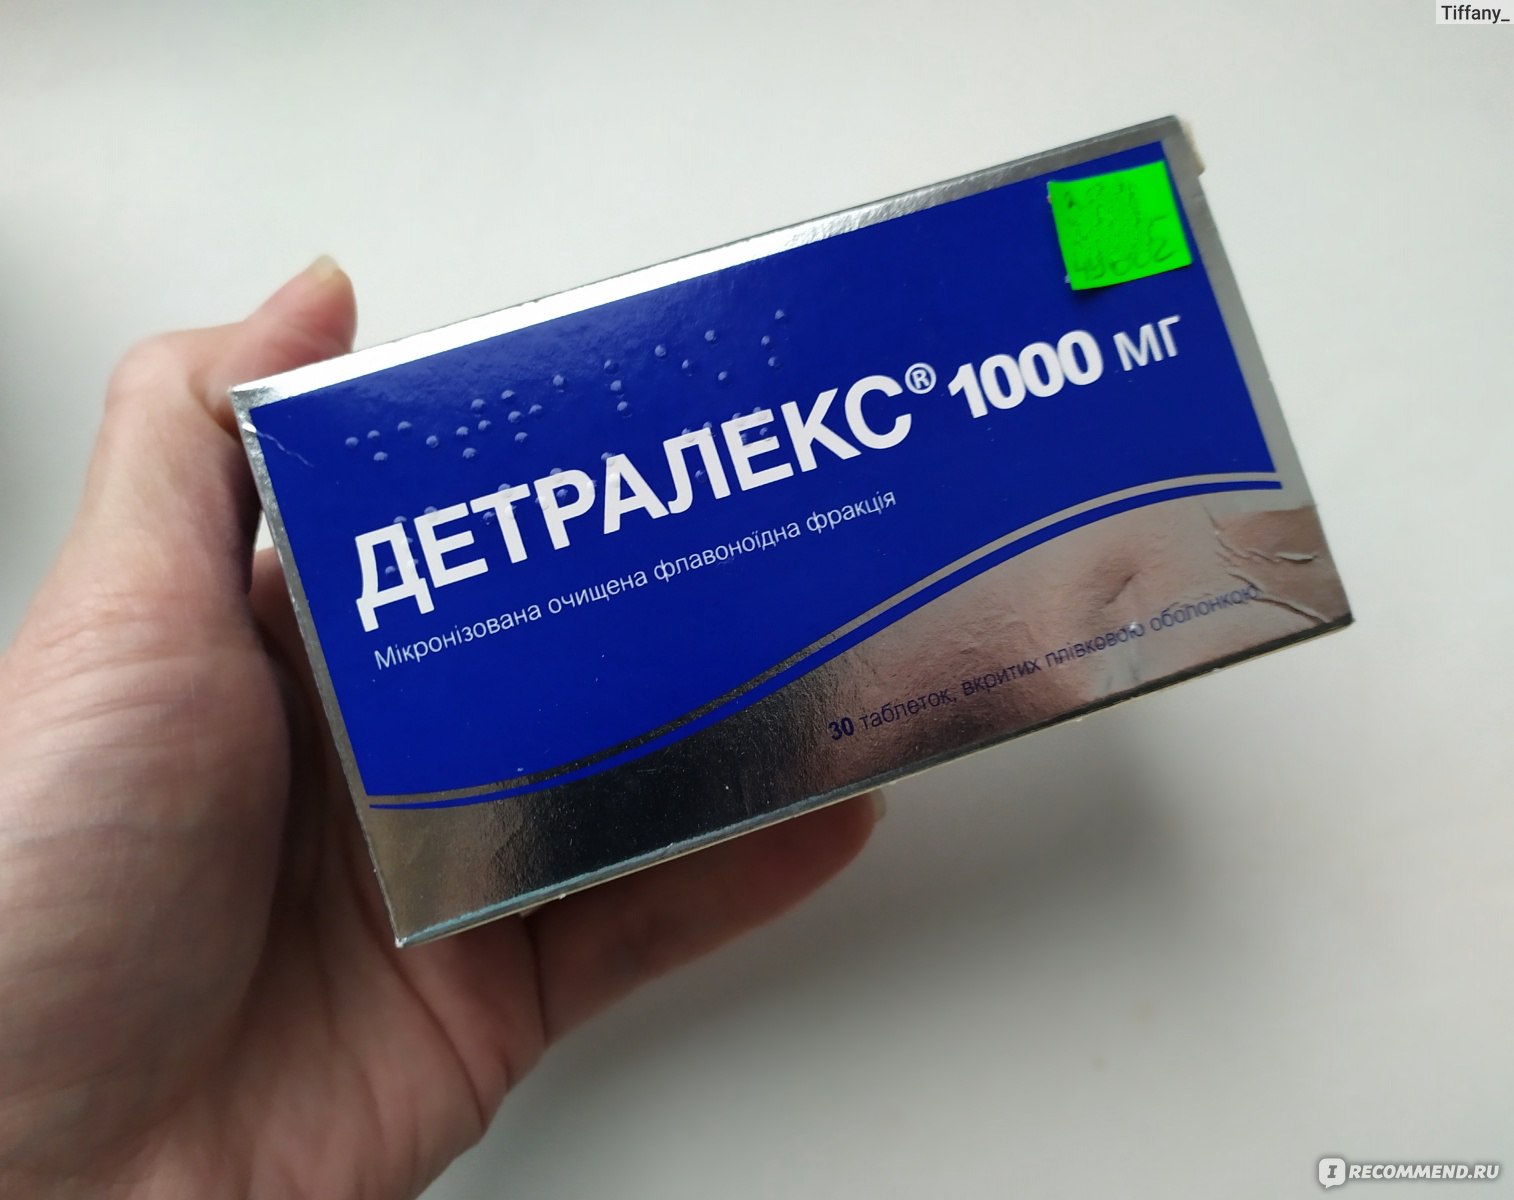 Детралекс 1000 В Аптеке Здоров Ру